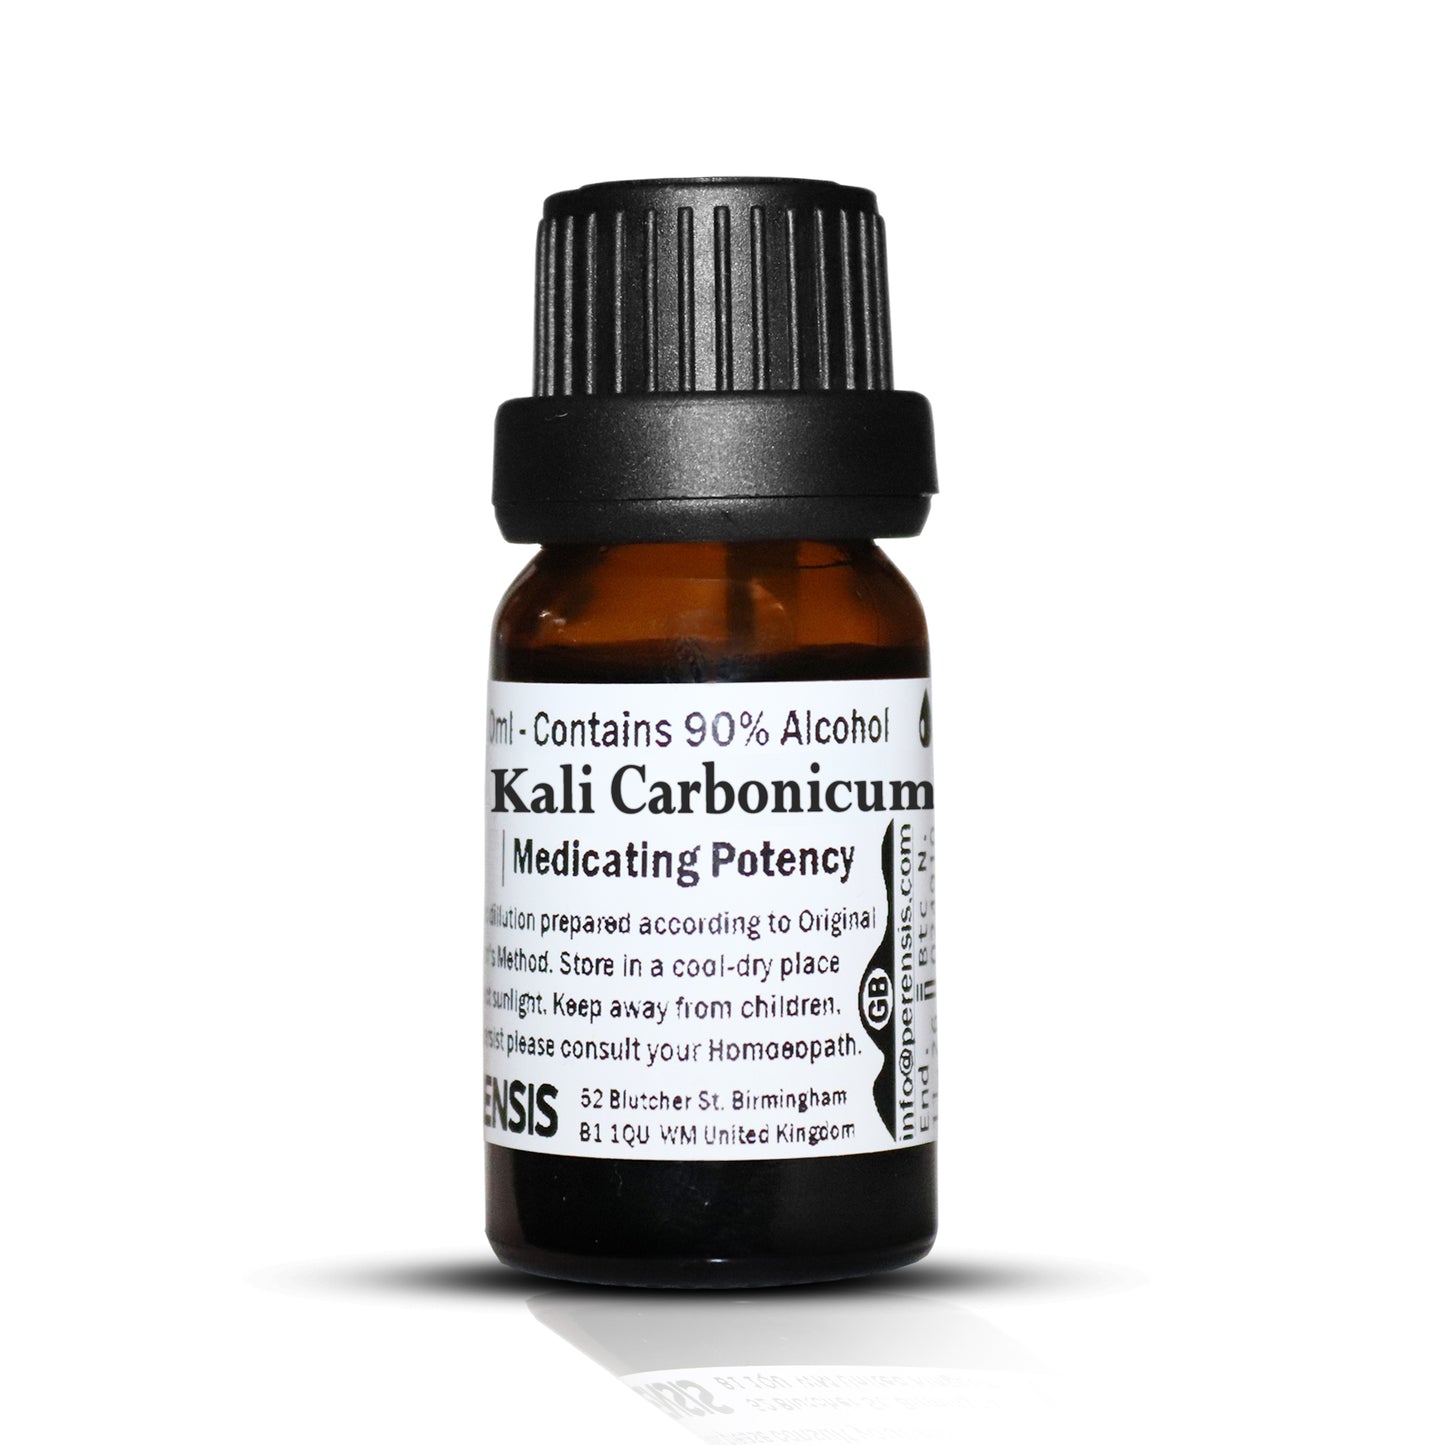 Kali Carbonicum